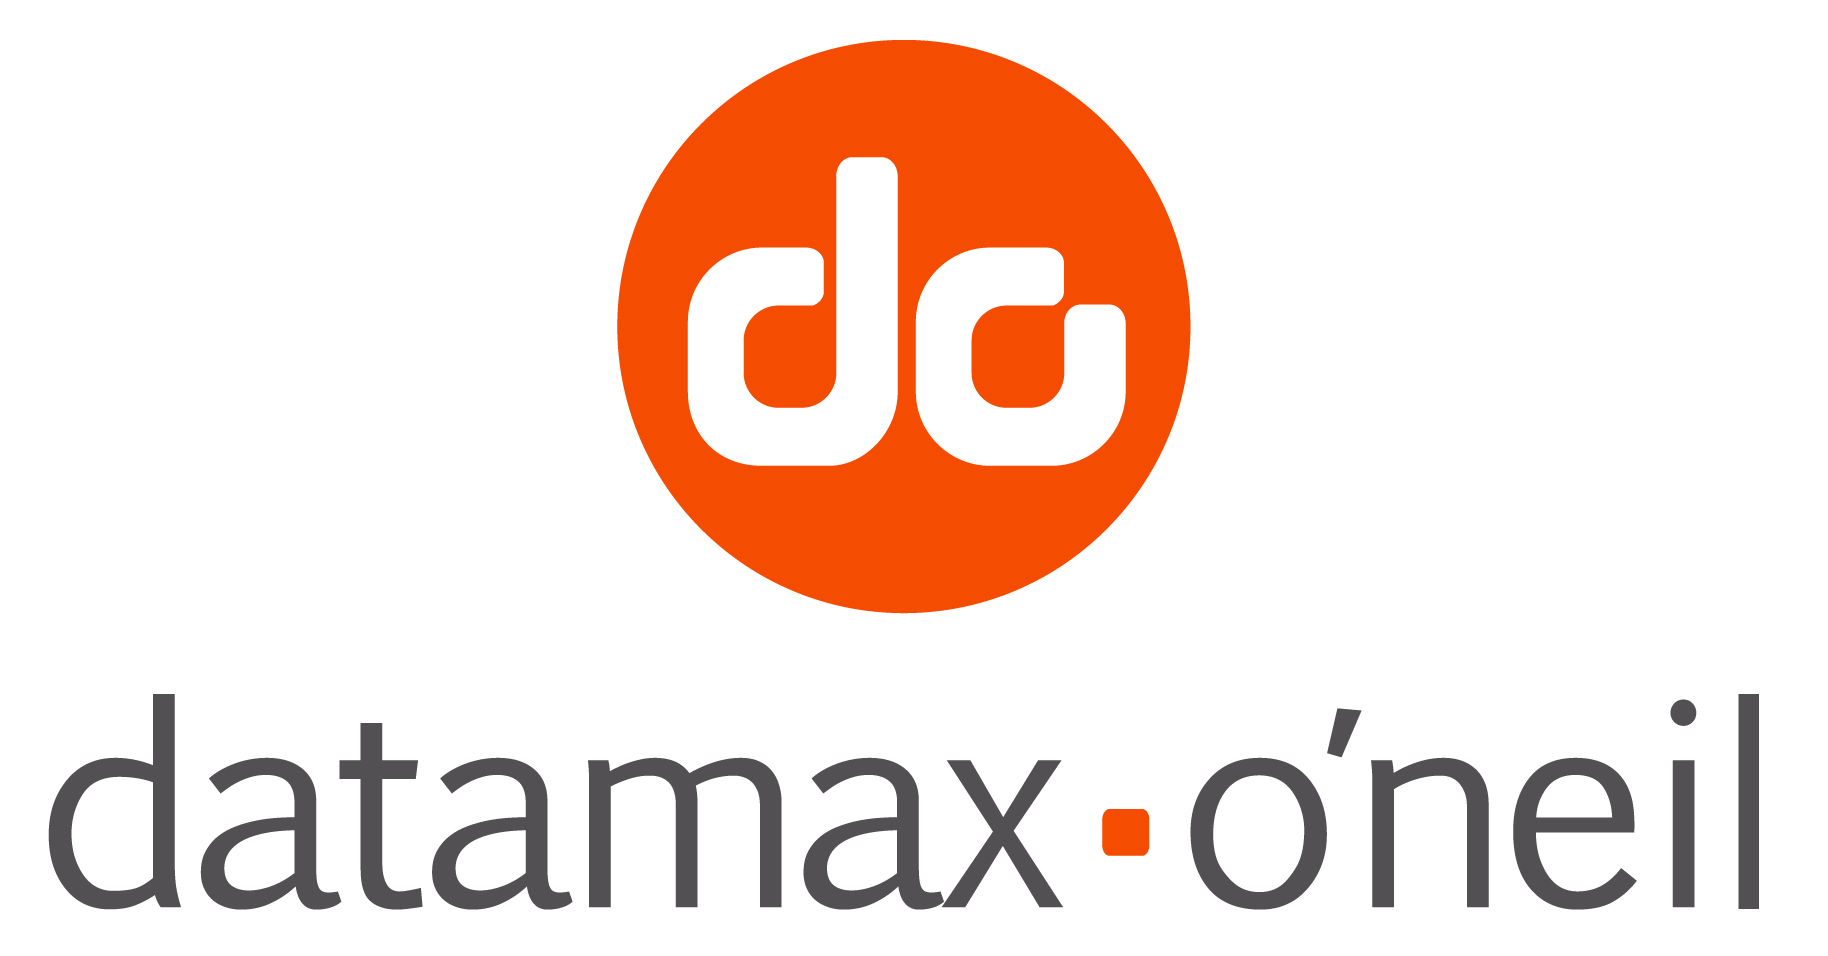 Datamax-O'neil